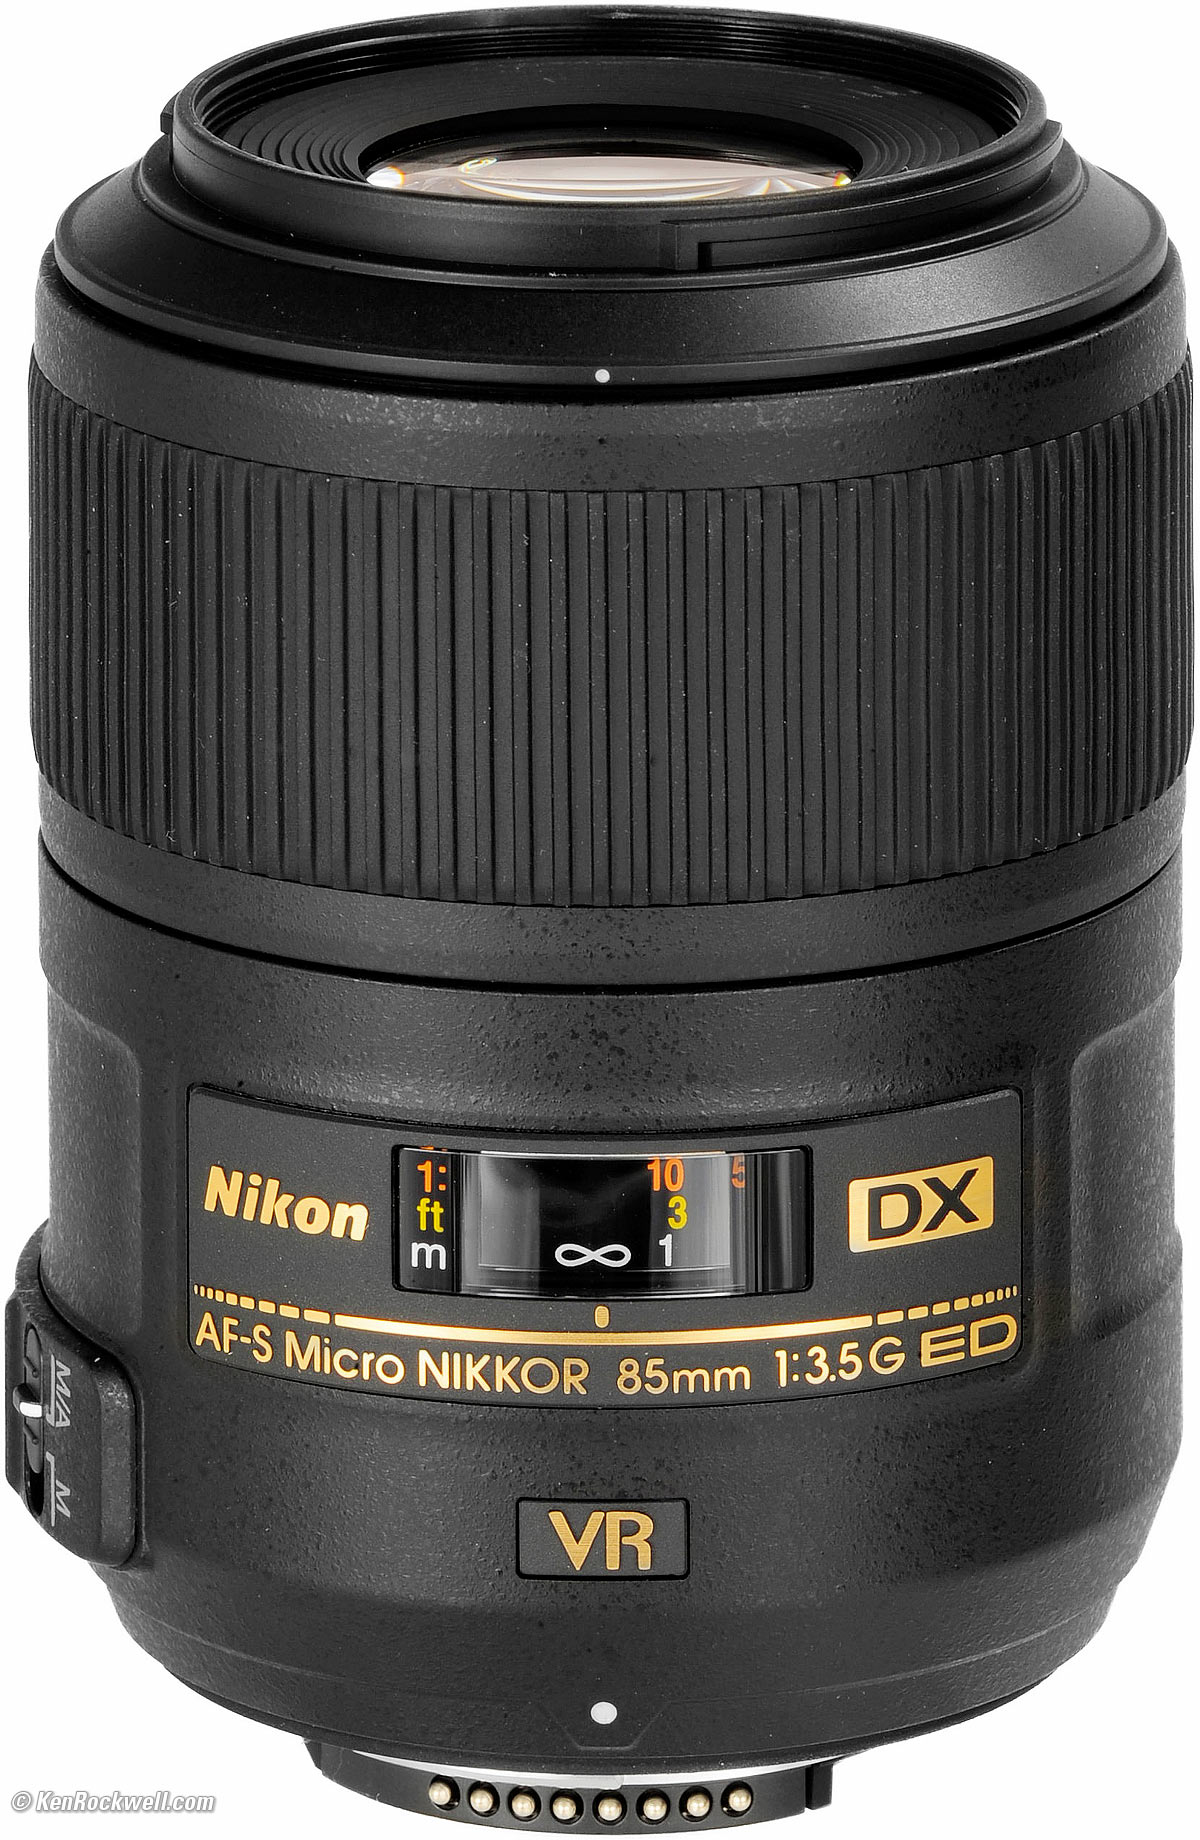 AF-S DX Micro NIKKOR 85mm f/3.5G ED VR-